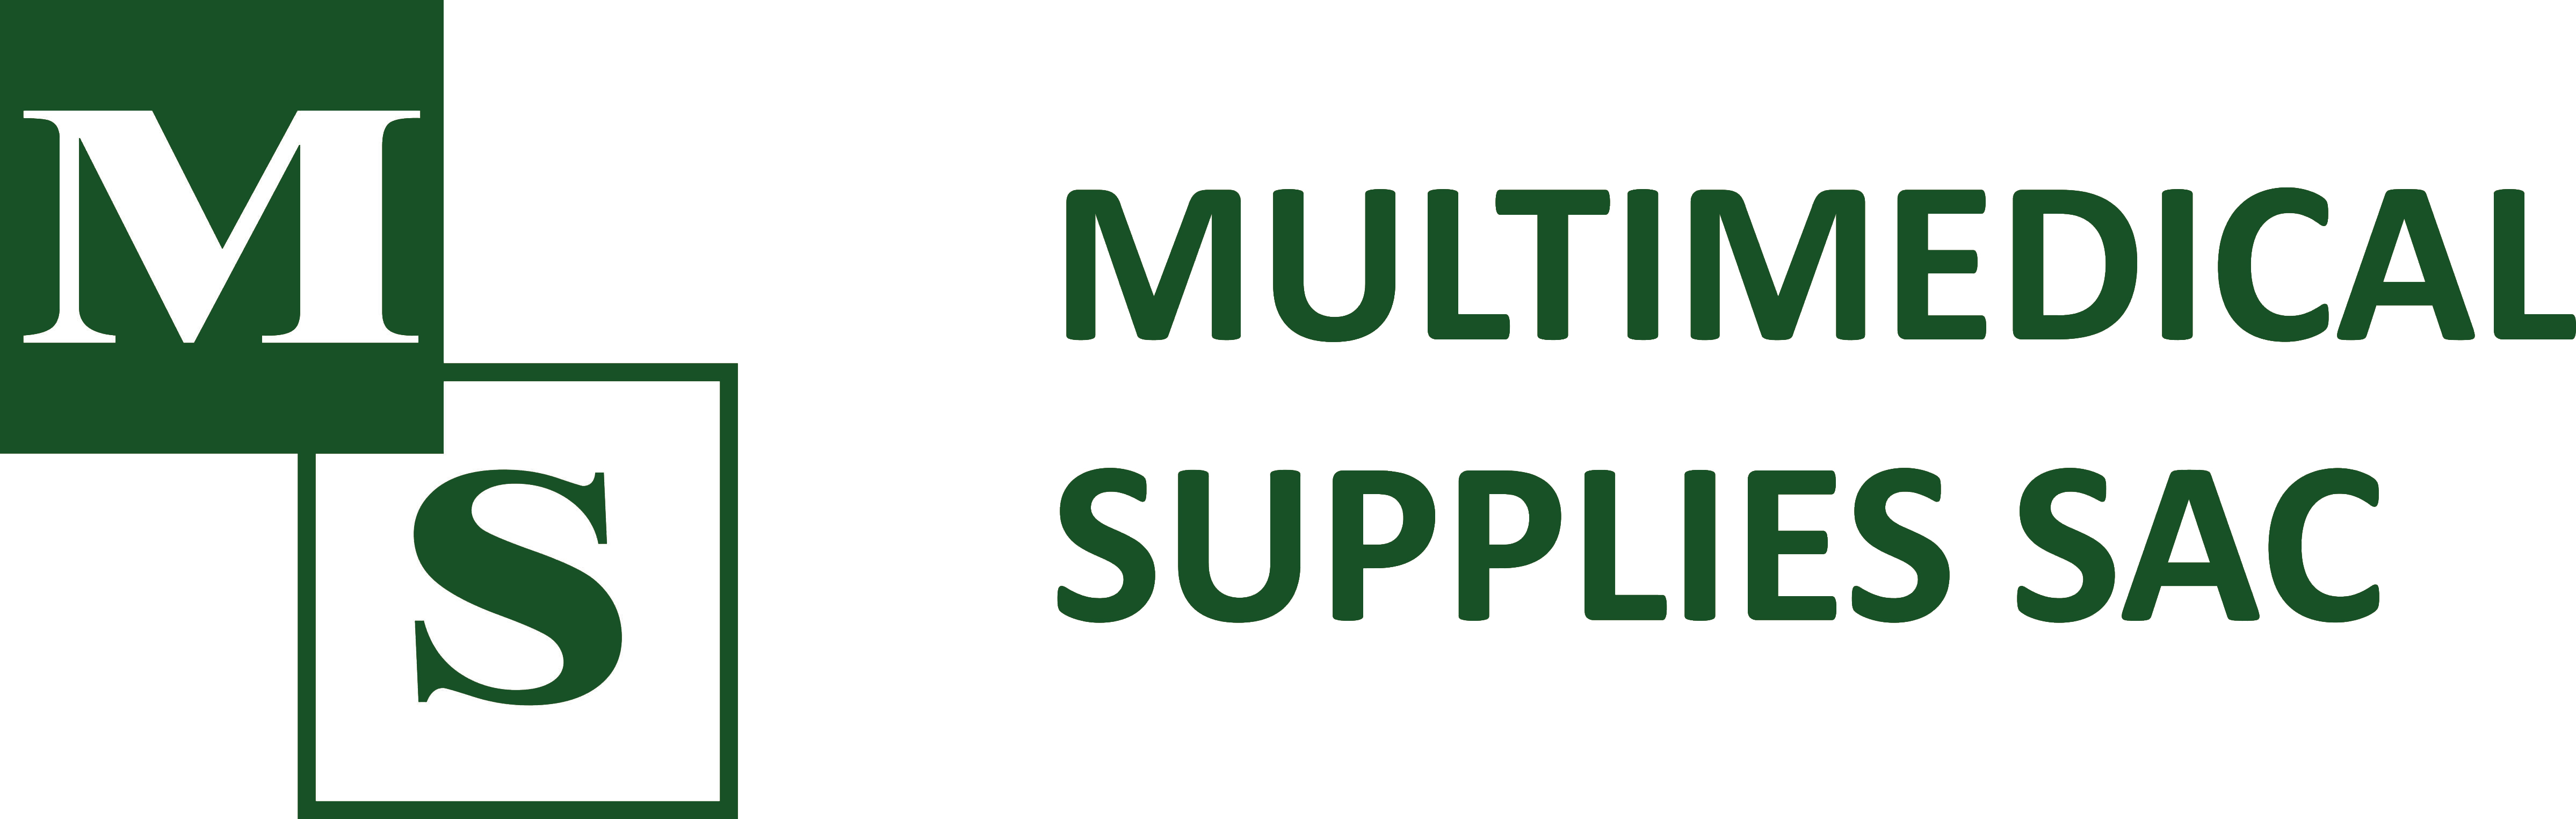 Multimedical Supplies SAC